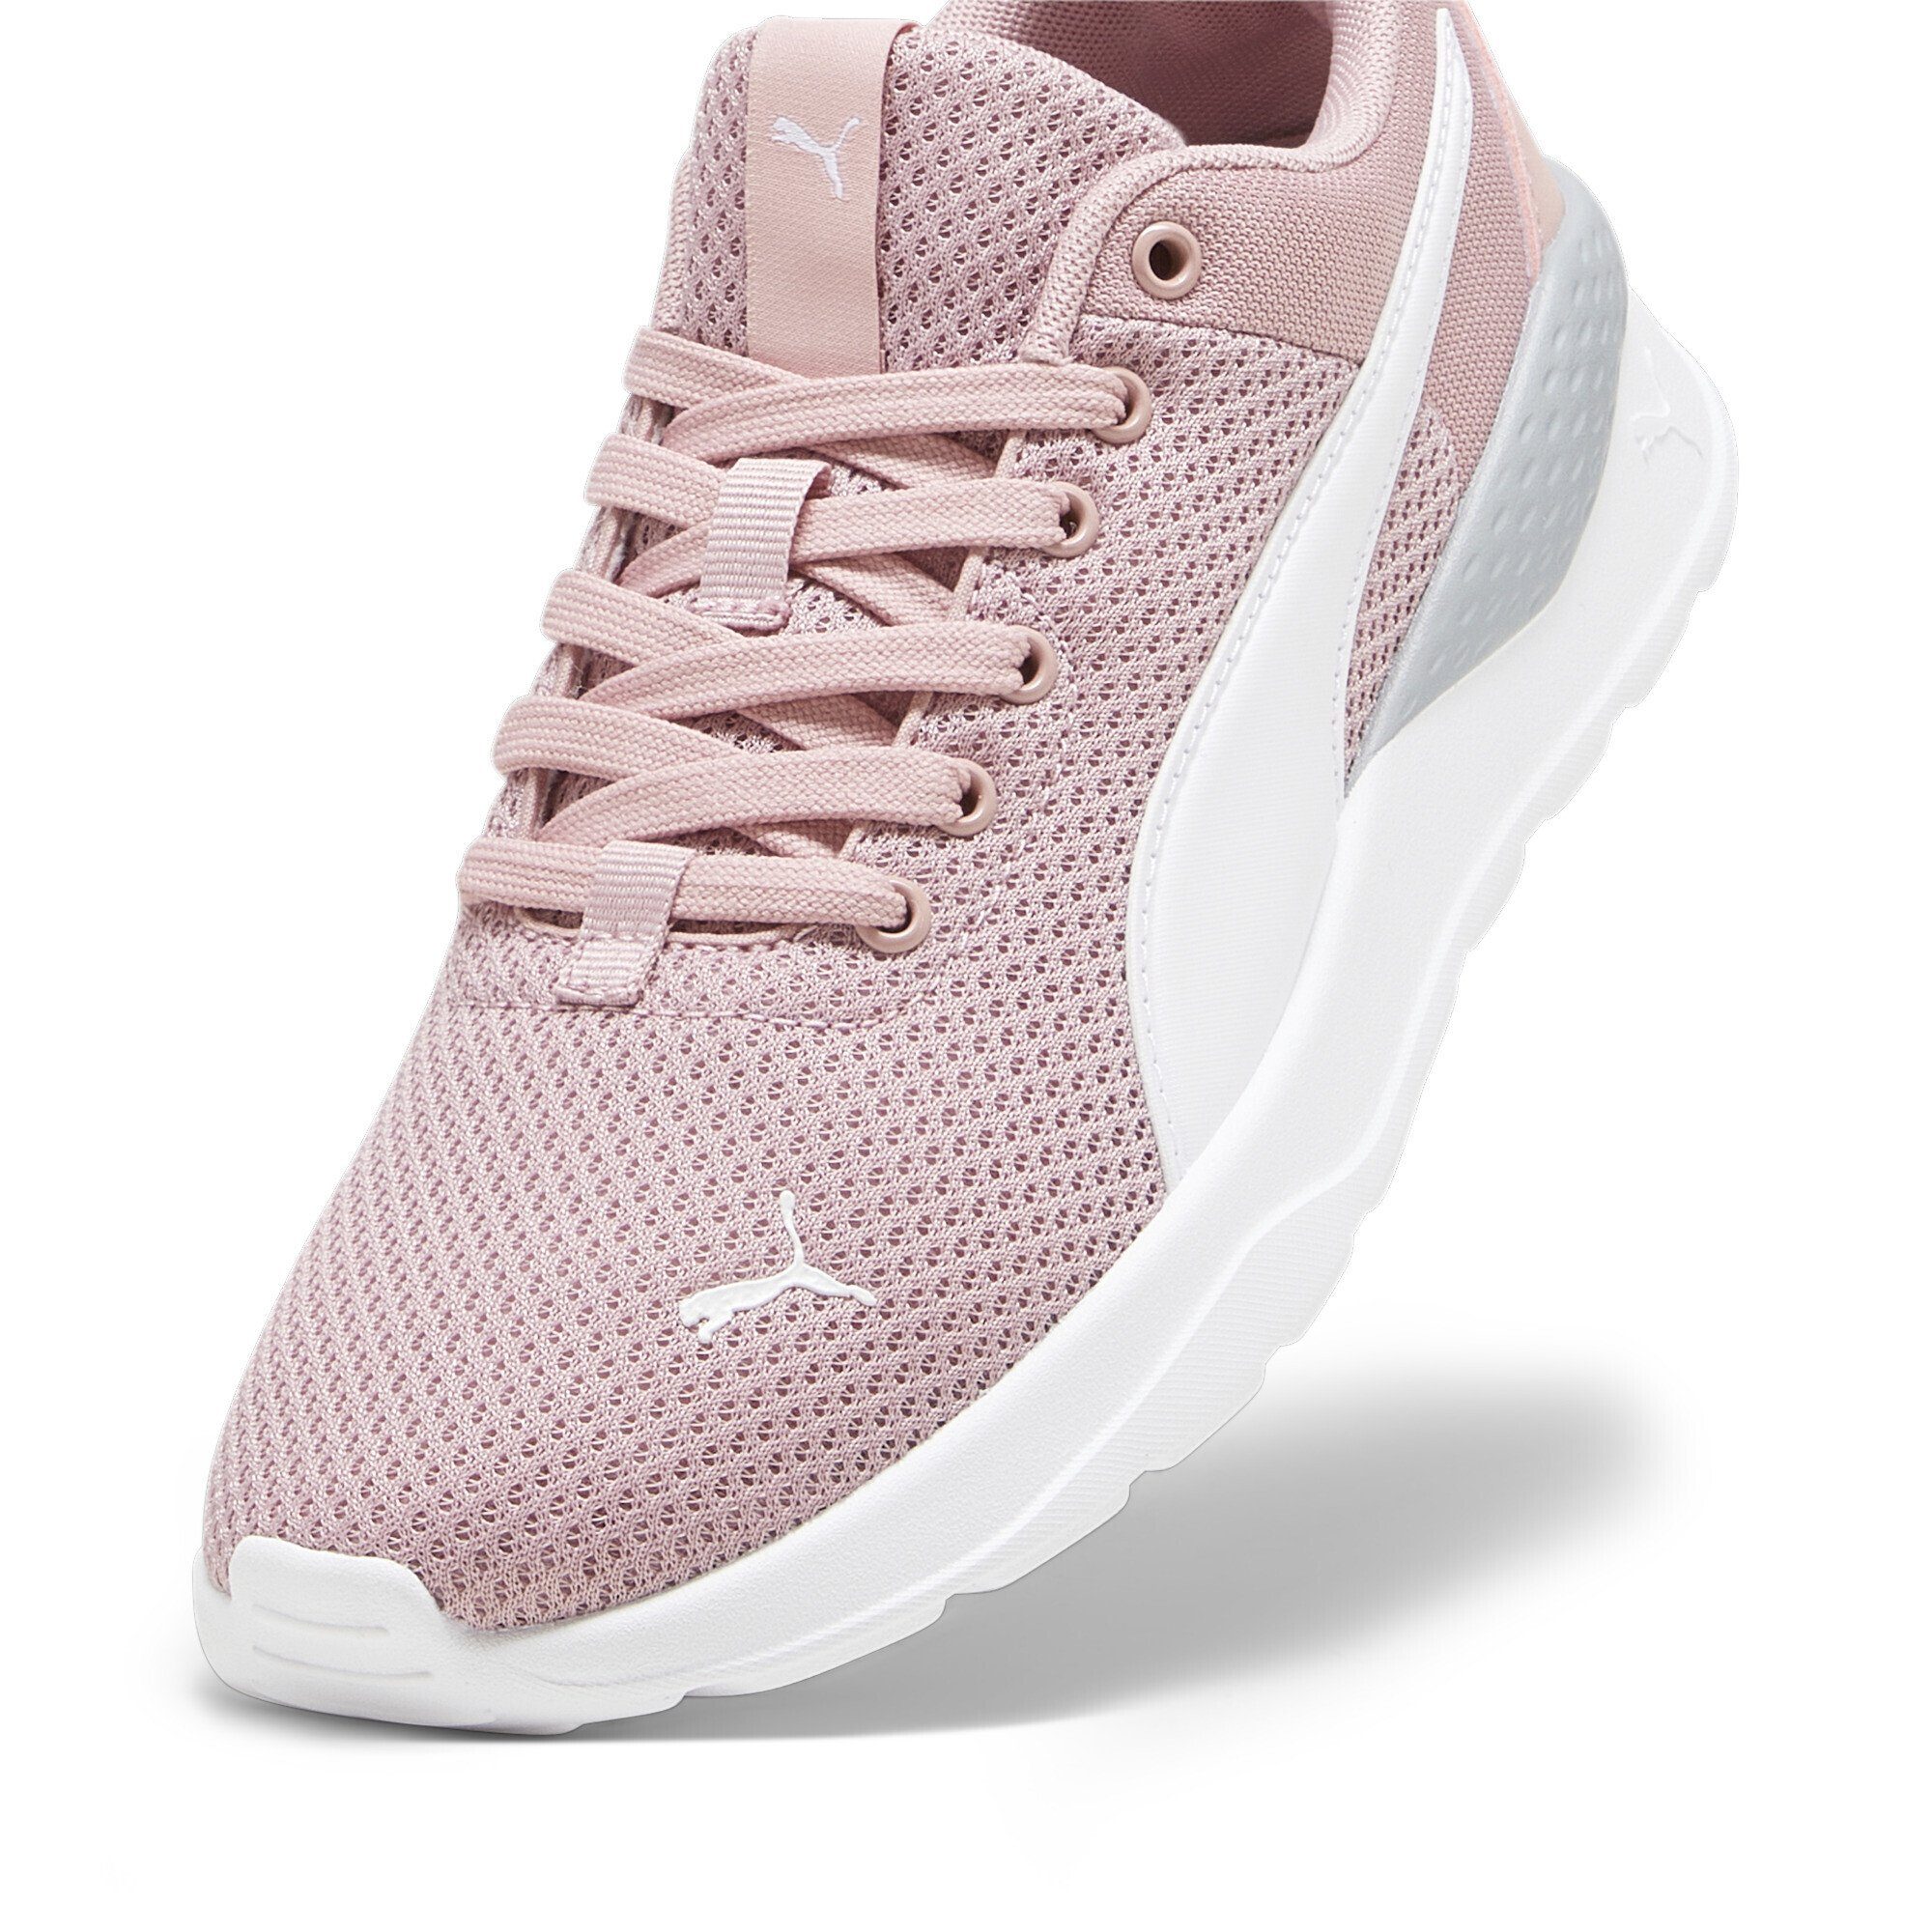 PUMA Anzarun Lite Peach Smoothie White Pink Jugendliche Sneakers Laufschuh